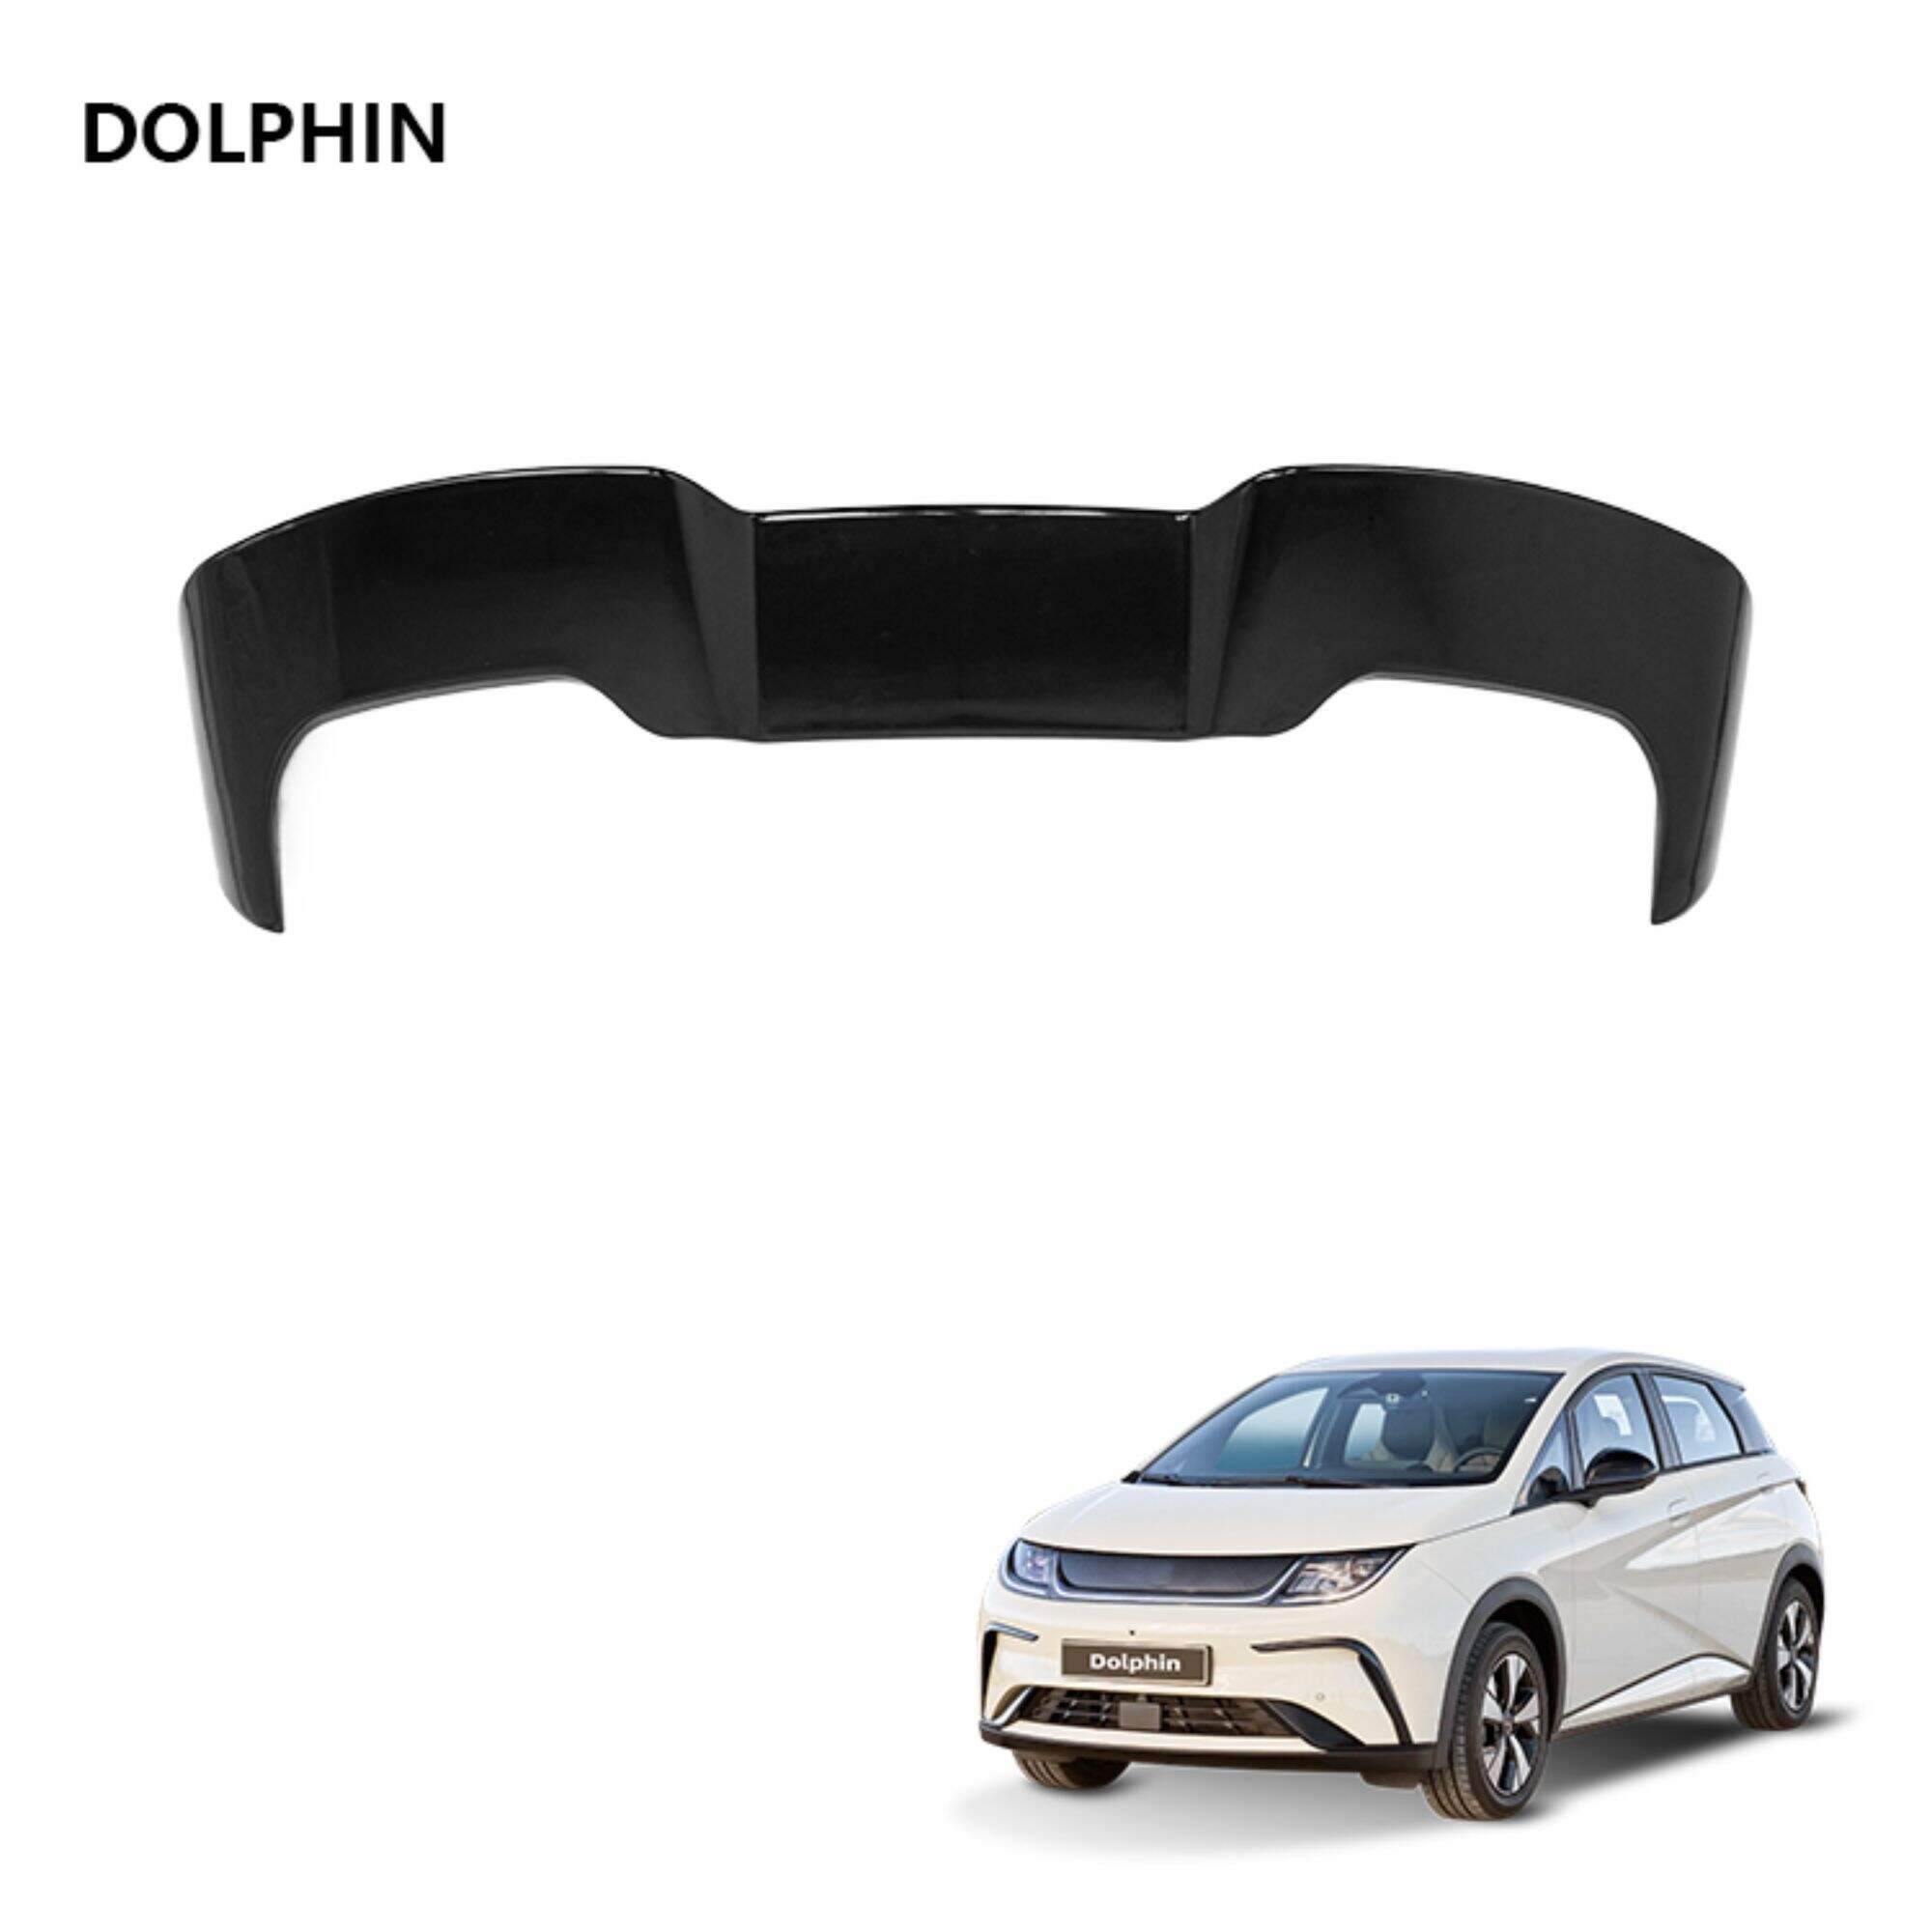 Внешние аксессуары для электромобиля Dolphin, узор из углеродного волокна, спойлер на багажник, универсальный автомобильный спойлер на заднюю крышу, крыло для BYD Dolphin